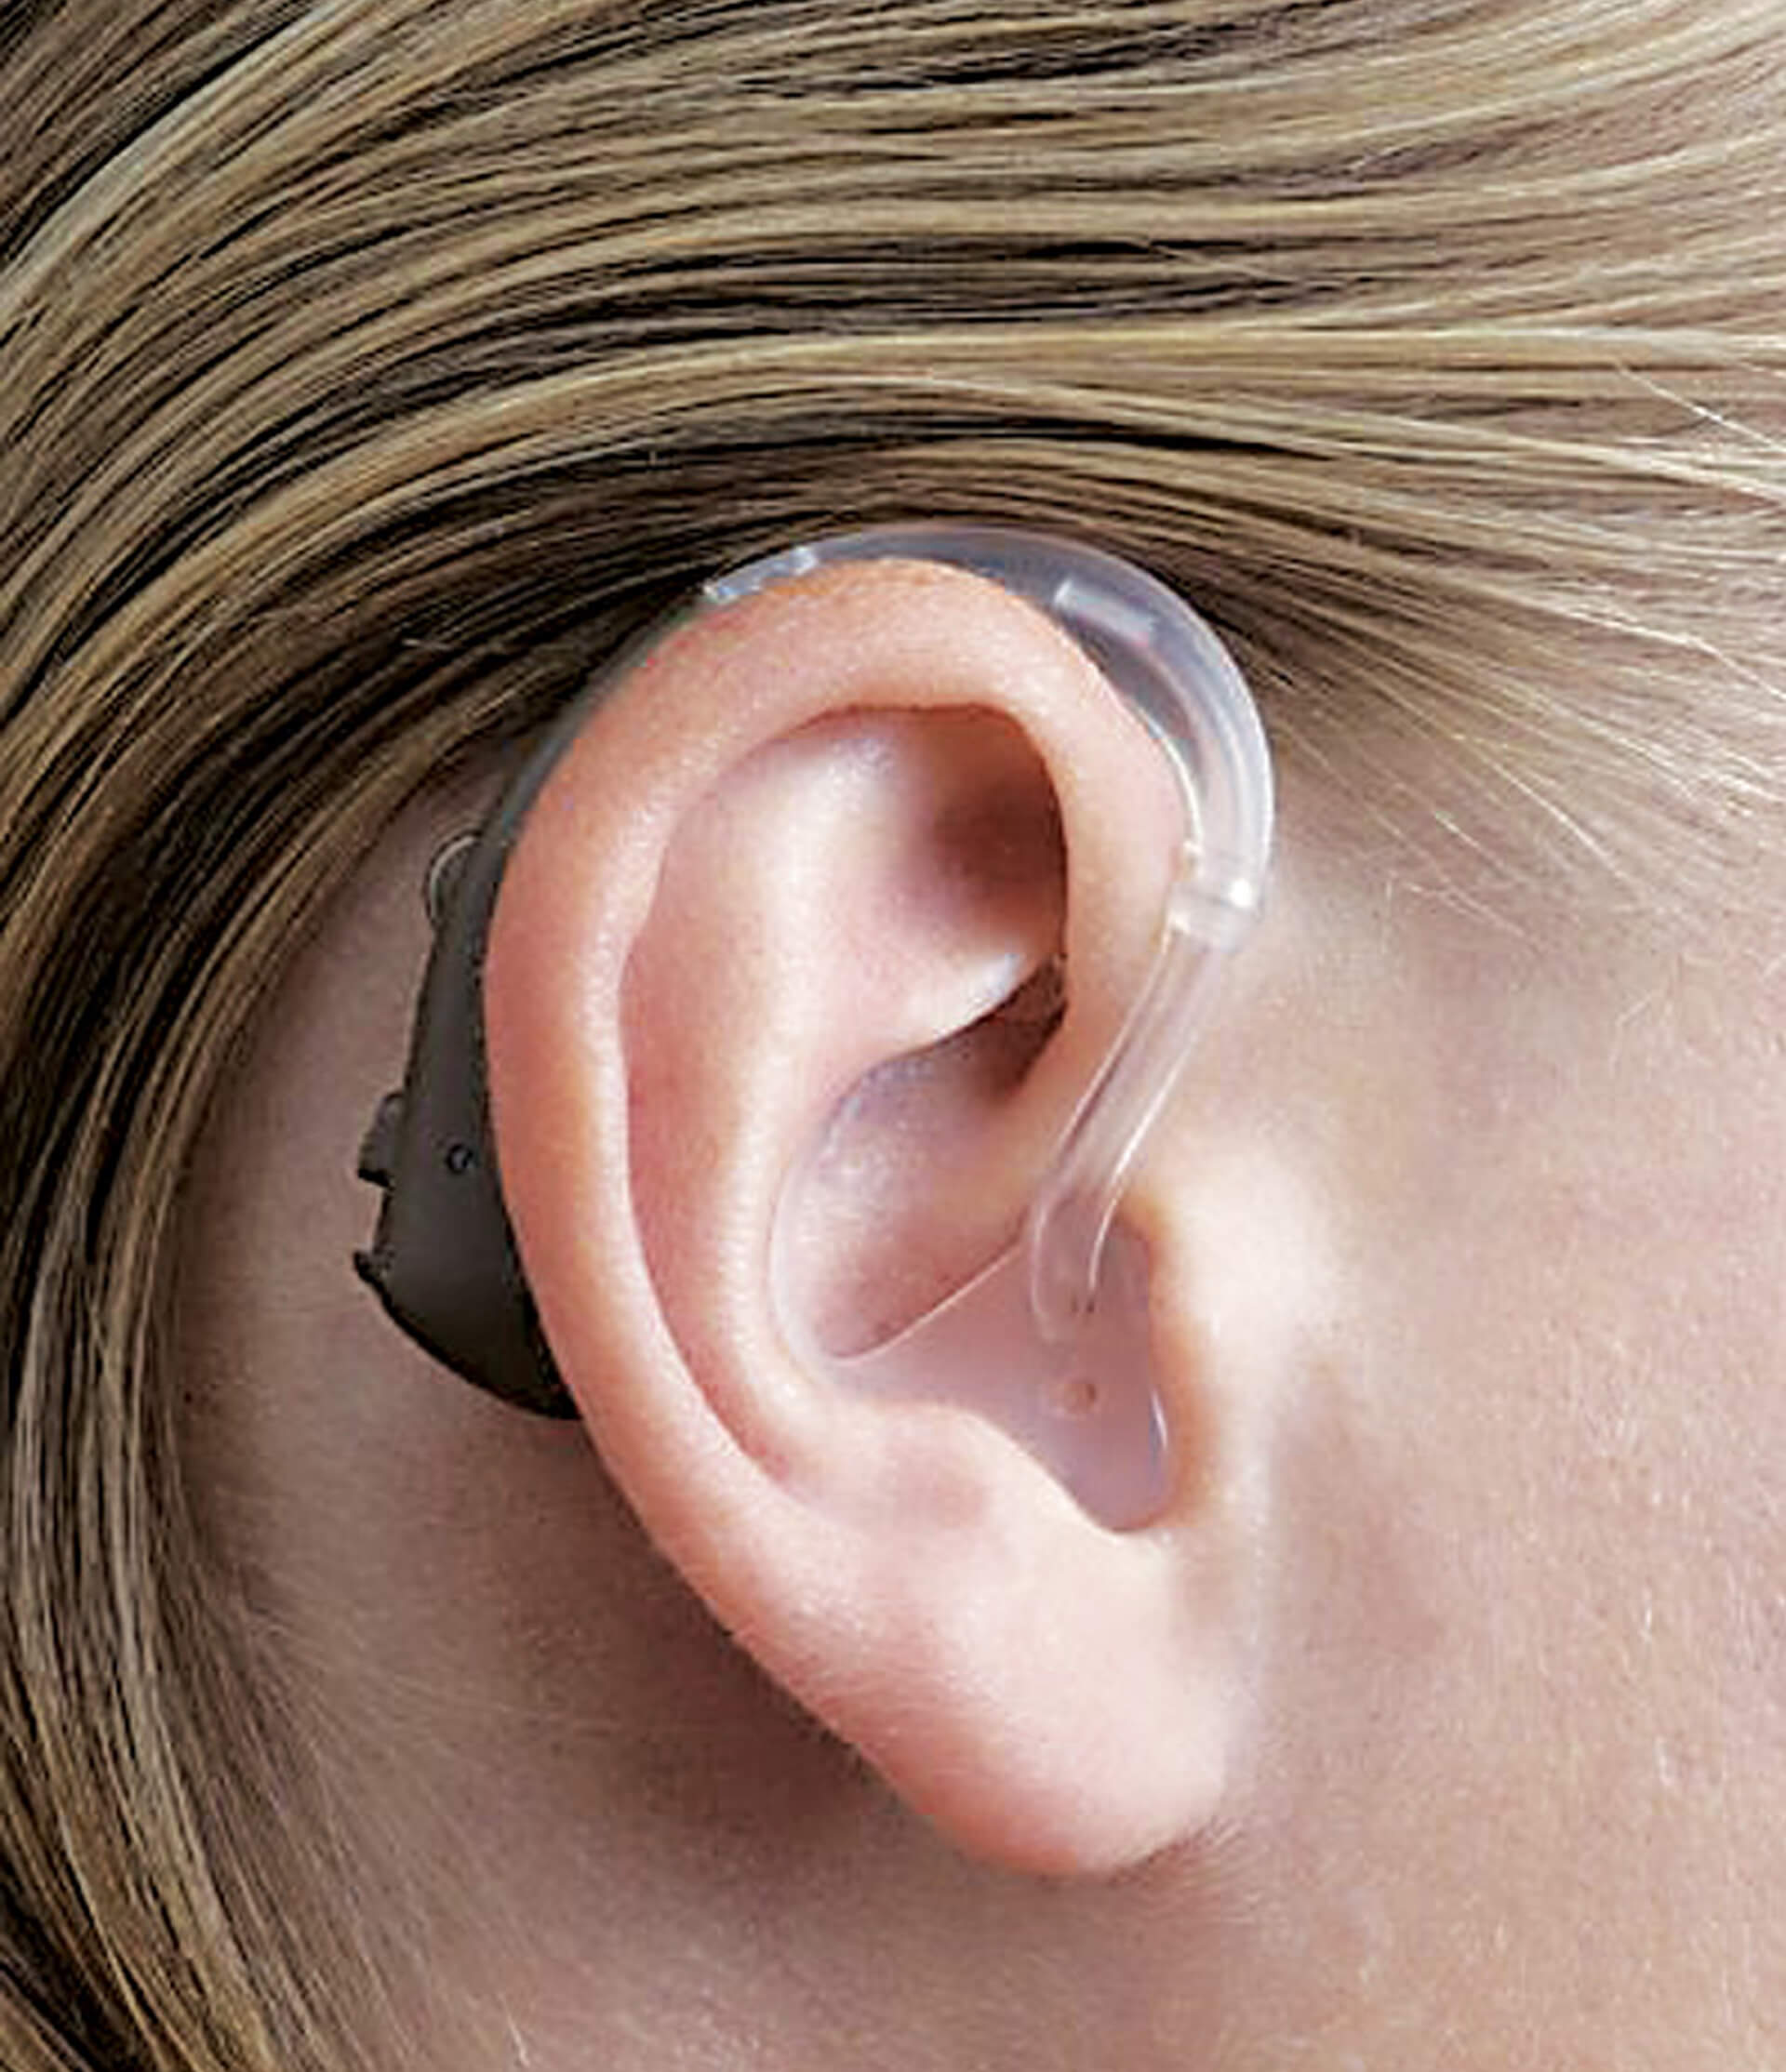 Quando um aparelho auditivo retroauricular é indicado